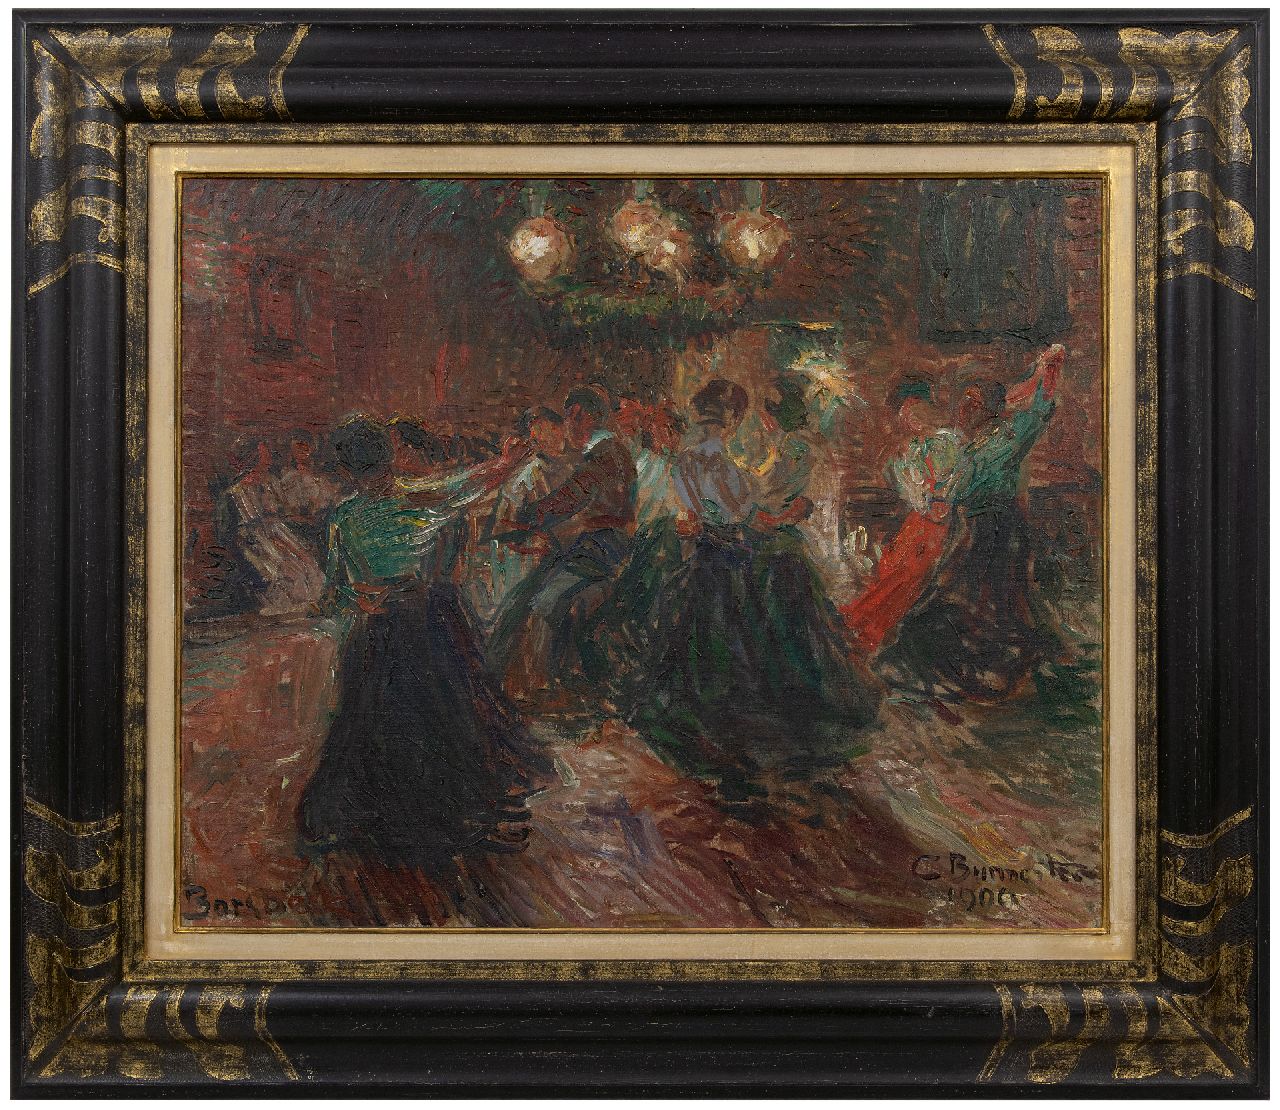 Burmester G.  | Georg Burmester | Schilderijen te koop aangeboden | Feestavond, olieverf op doek 61,5 x 75,6 cm, gesigneerd rechtsonder en gedateerd 1909